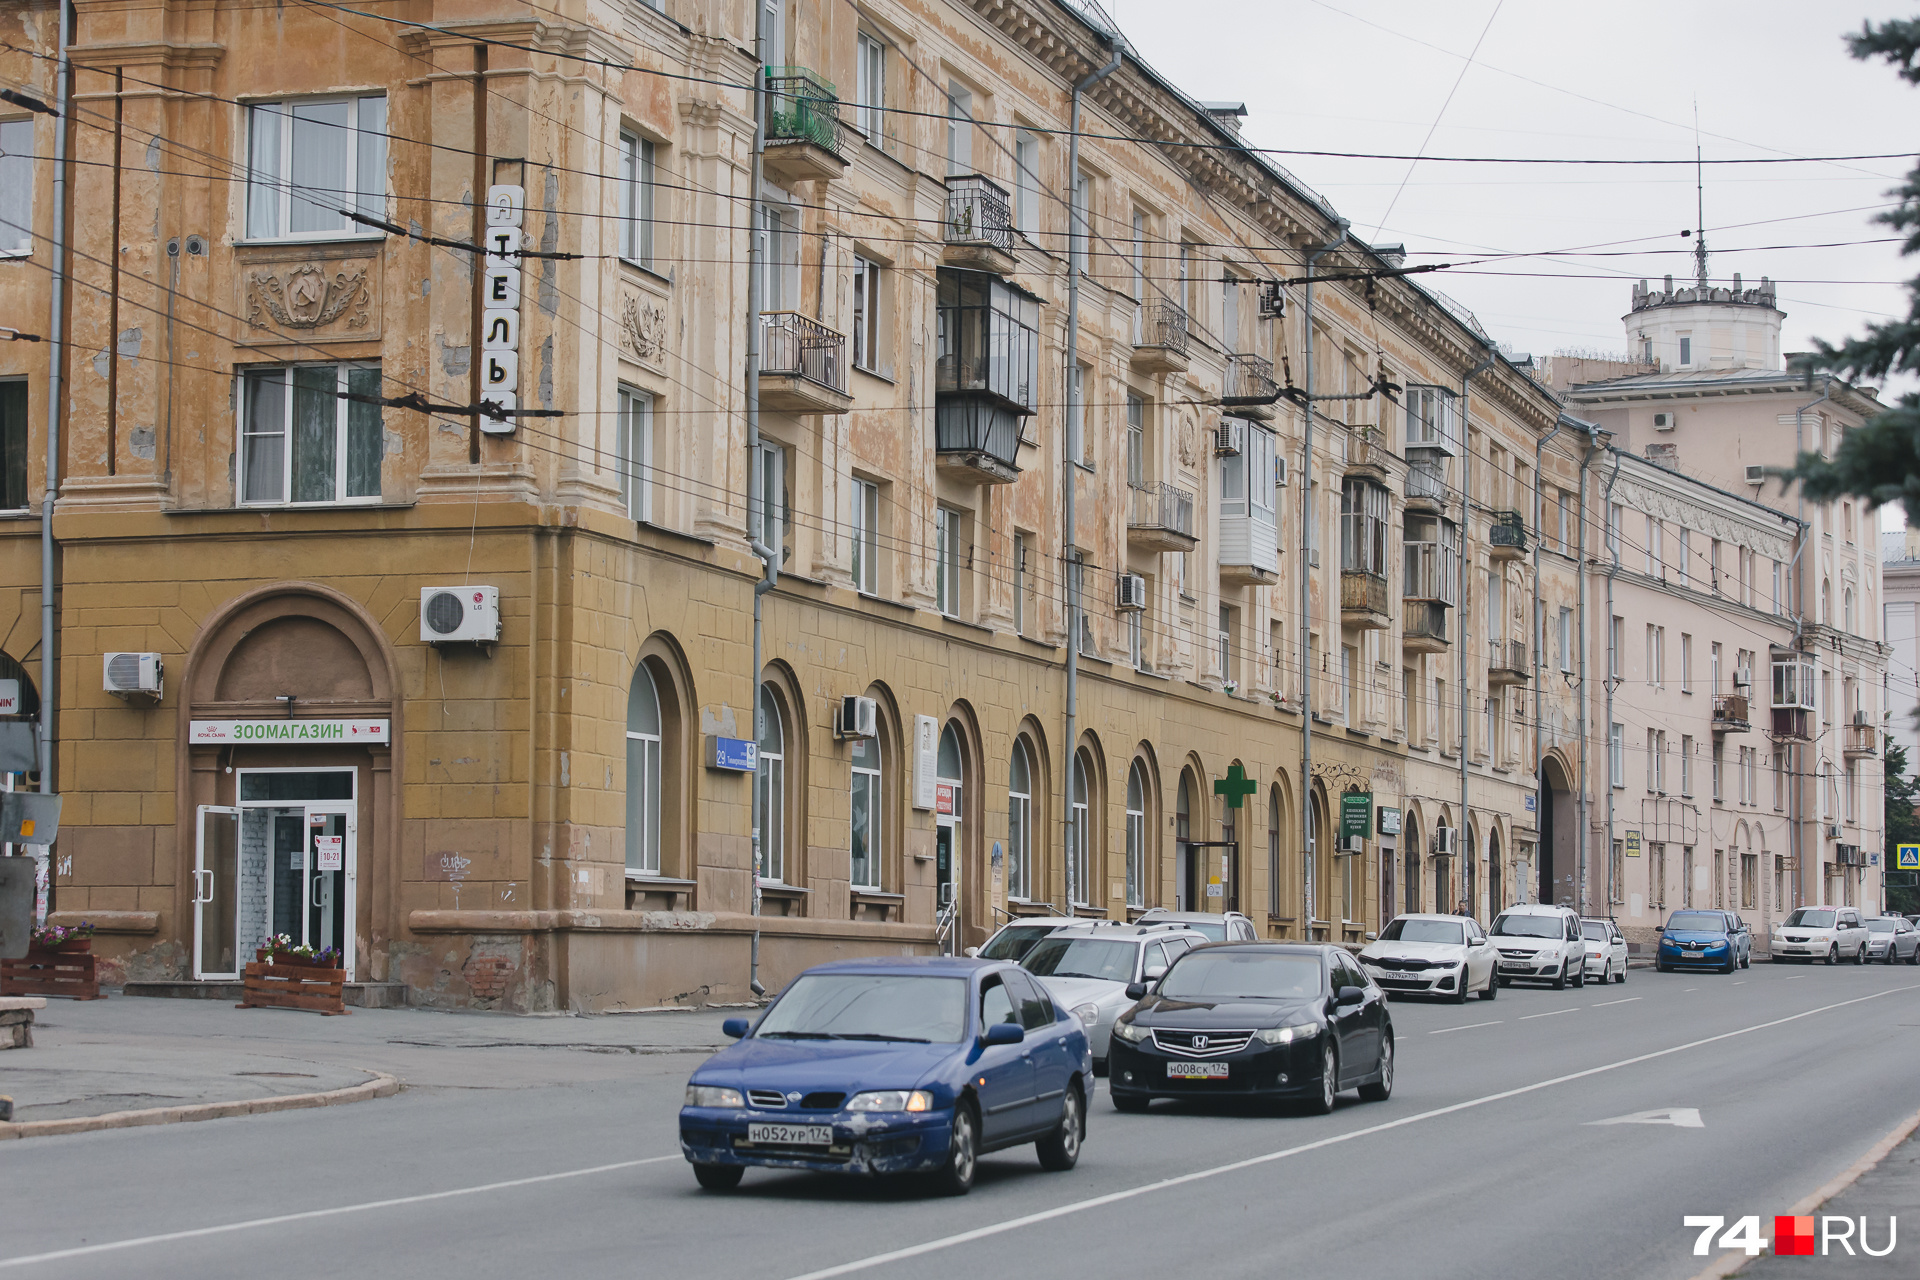 Ремонт одного квадратного метра фасада по нормам должен стоить не больше 2945 рублей, из-за этого работы на многих объектах буксуют